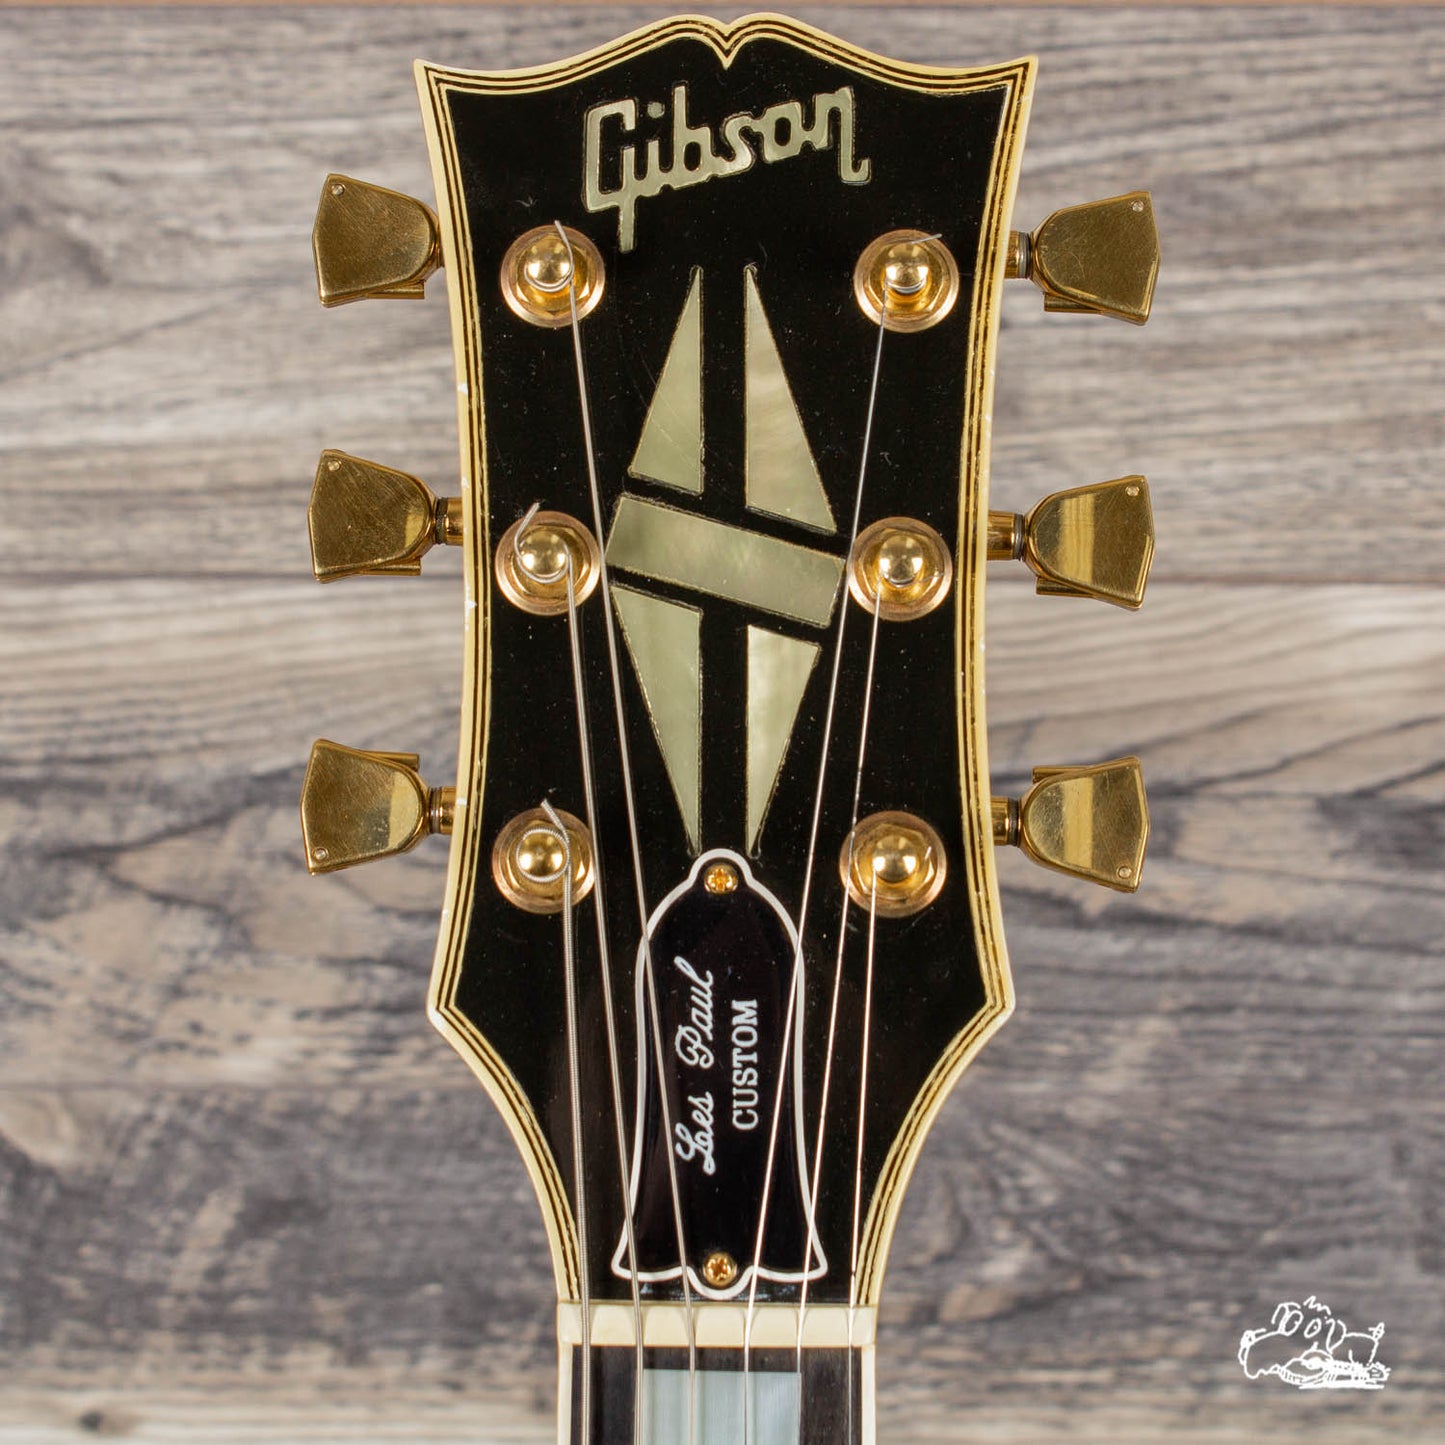 1984 Gibson Les Paul Custom "Black Beauty" w/ Case